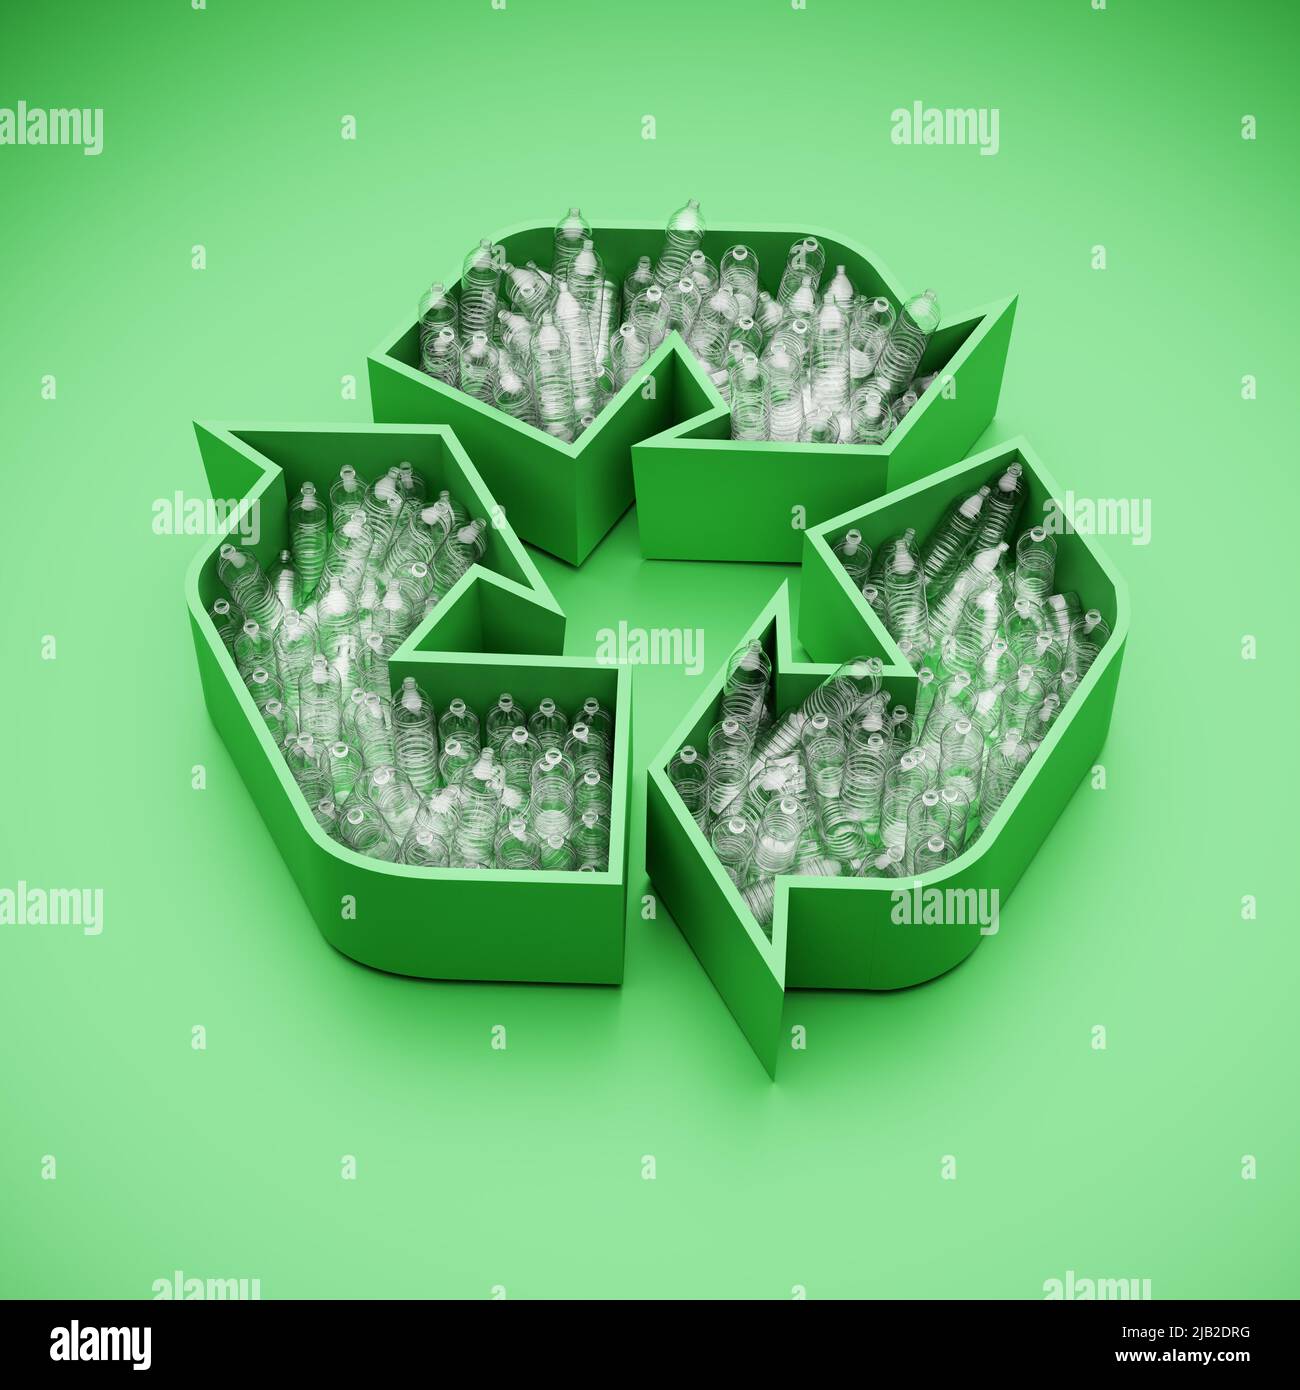 Vider les bouteilles d'eau en plastique portant un logo de recyclage vert. Concept de recyclage des déchets plastiques. Banque D'Images